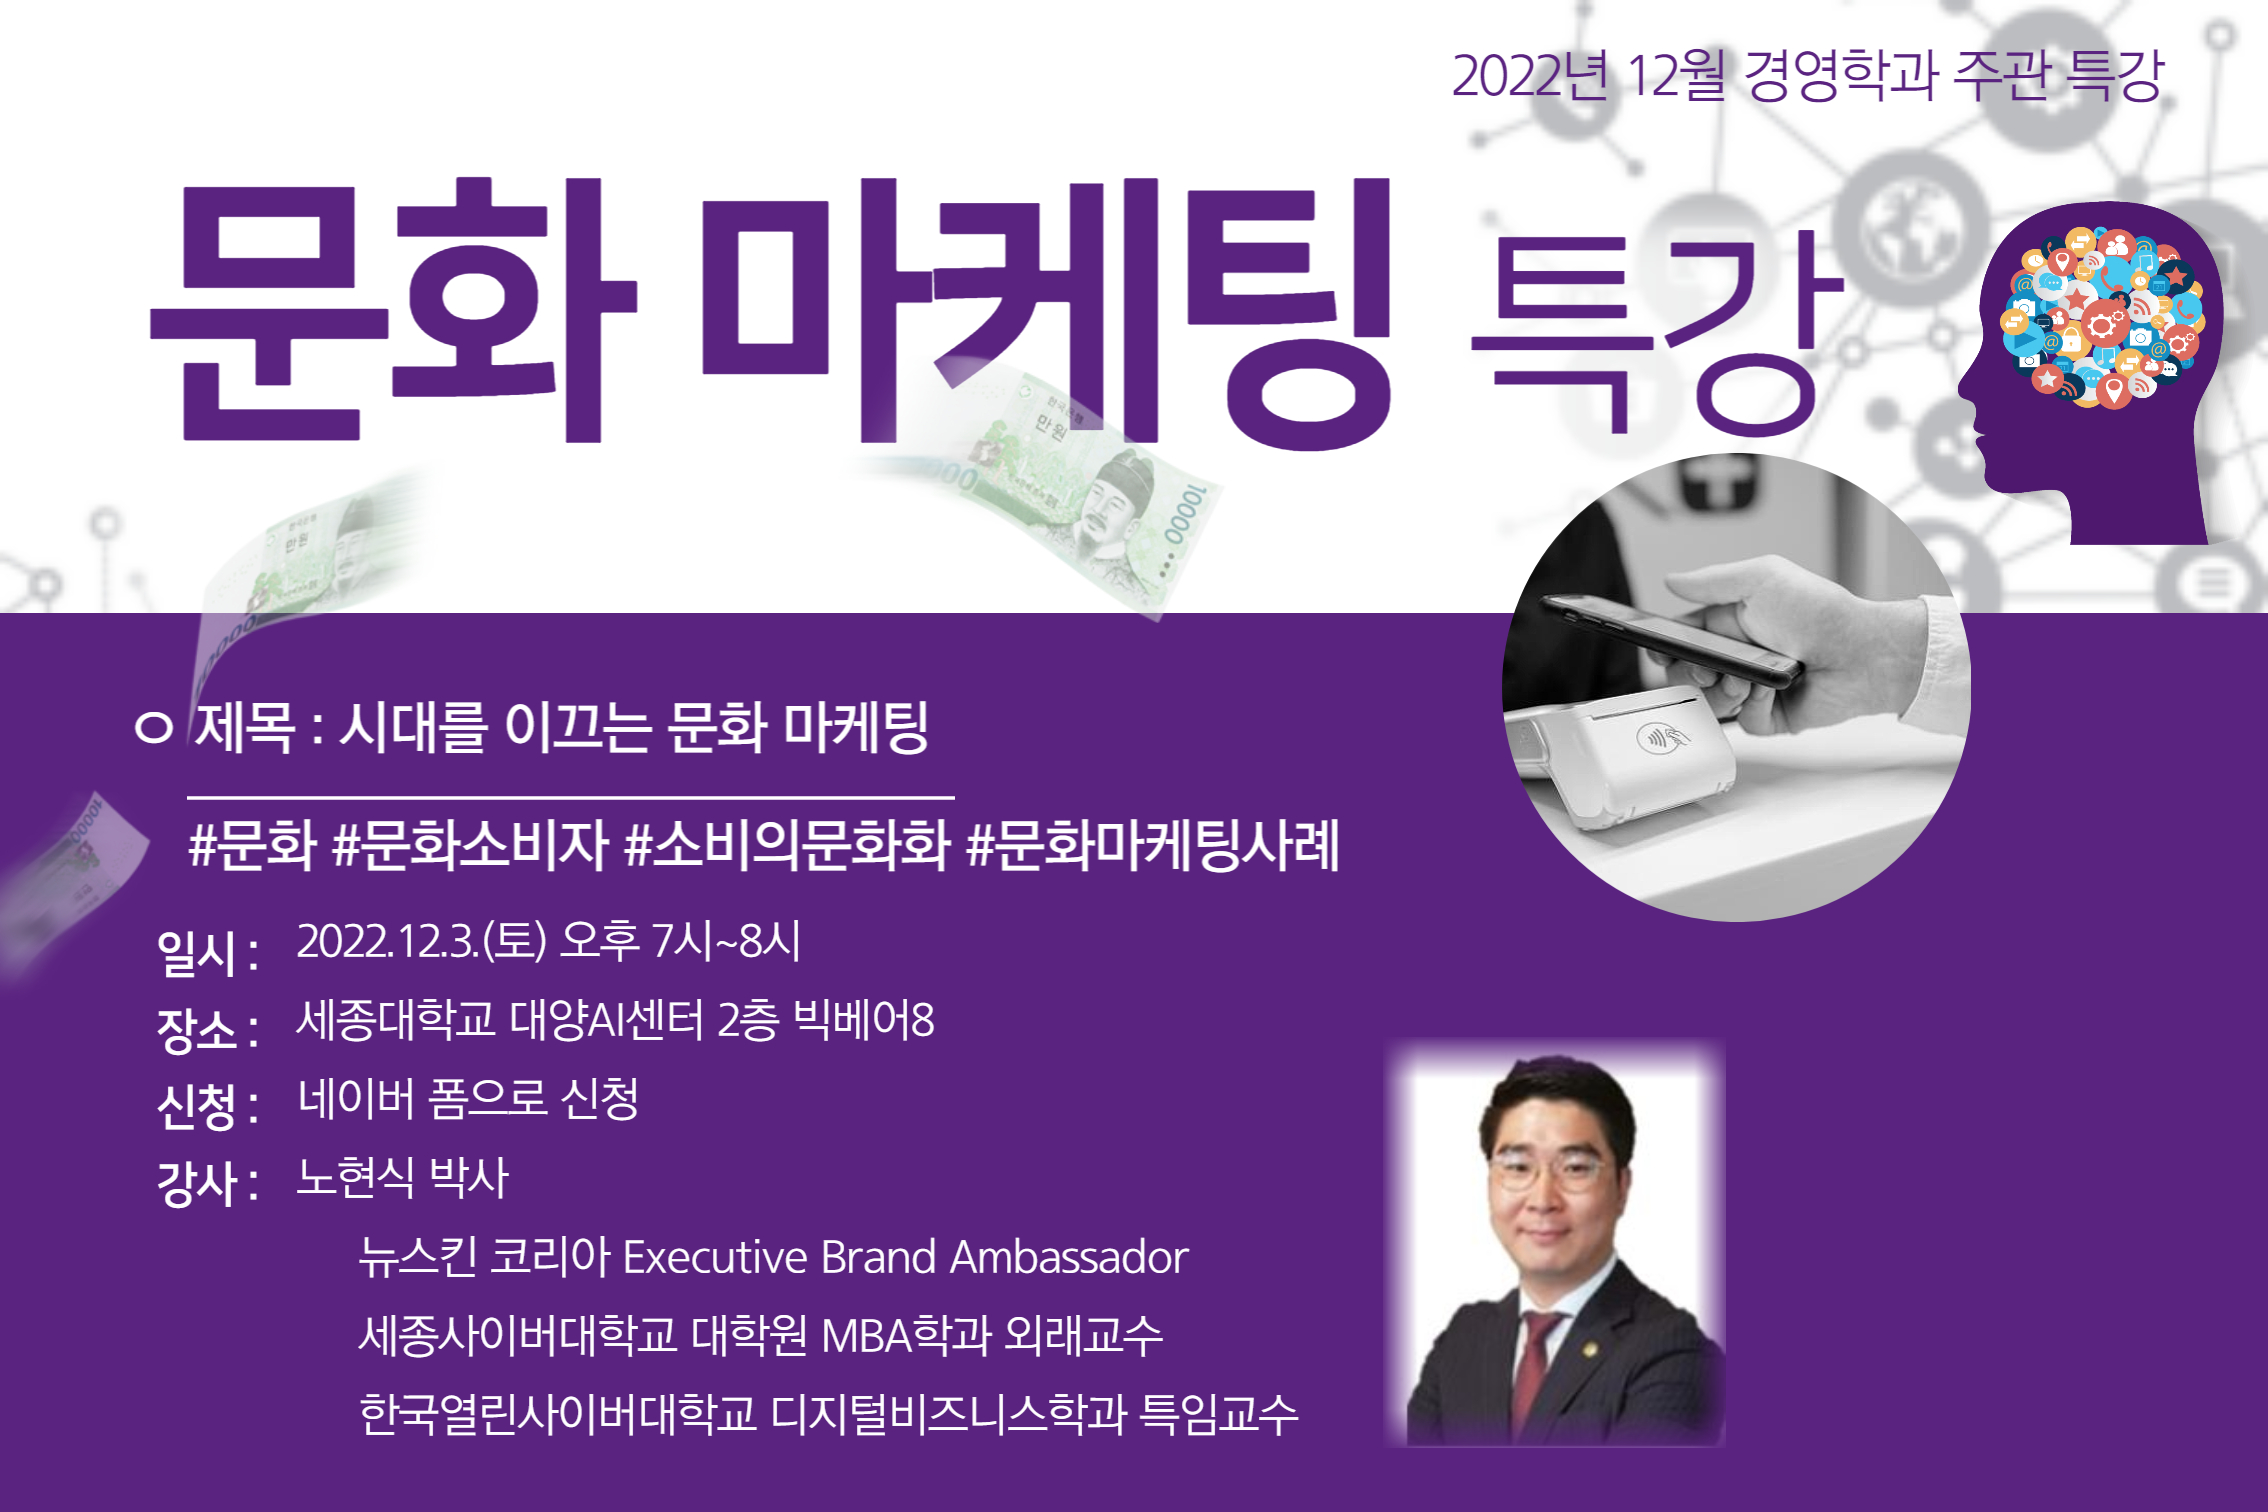 [한국경제tv] 세종사이버대학교 경영학과, ‘시대를 이끄는 문화마케팅’ 특강 개최